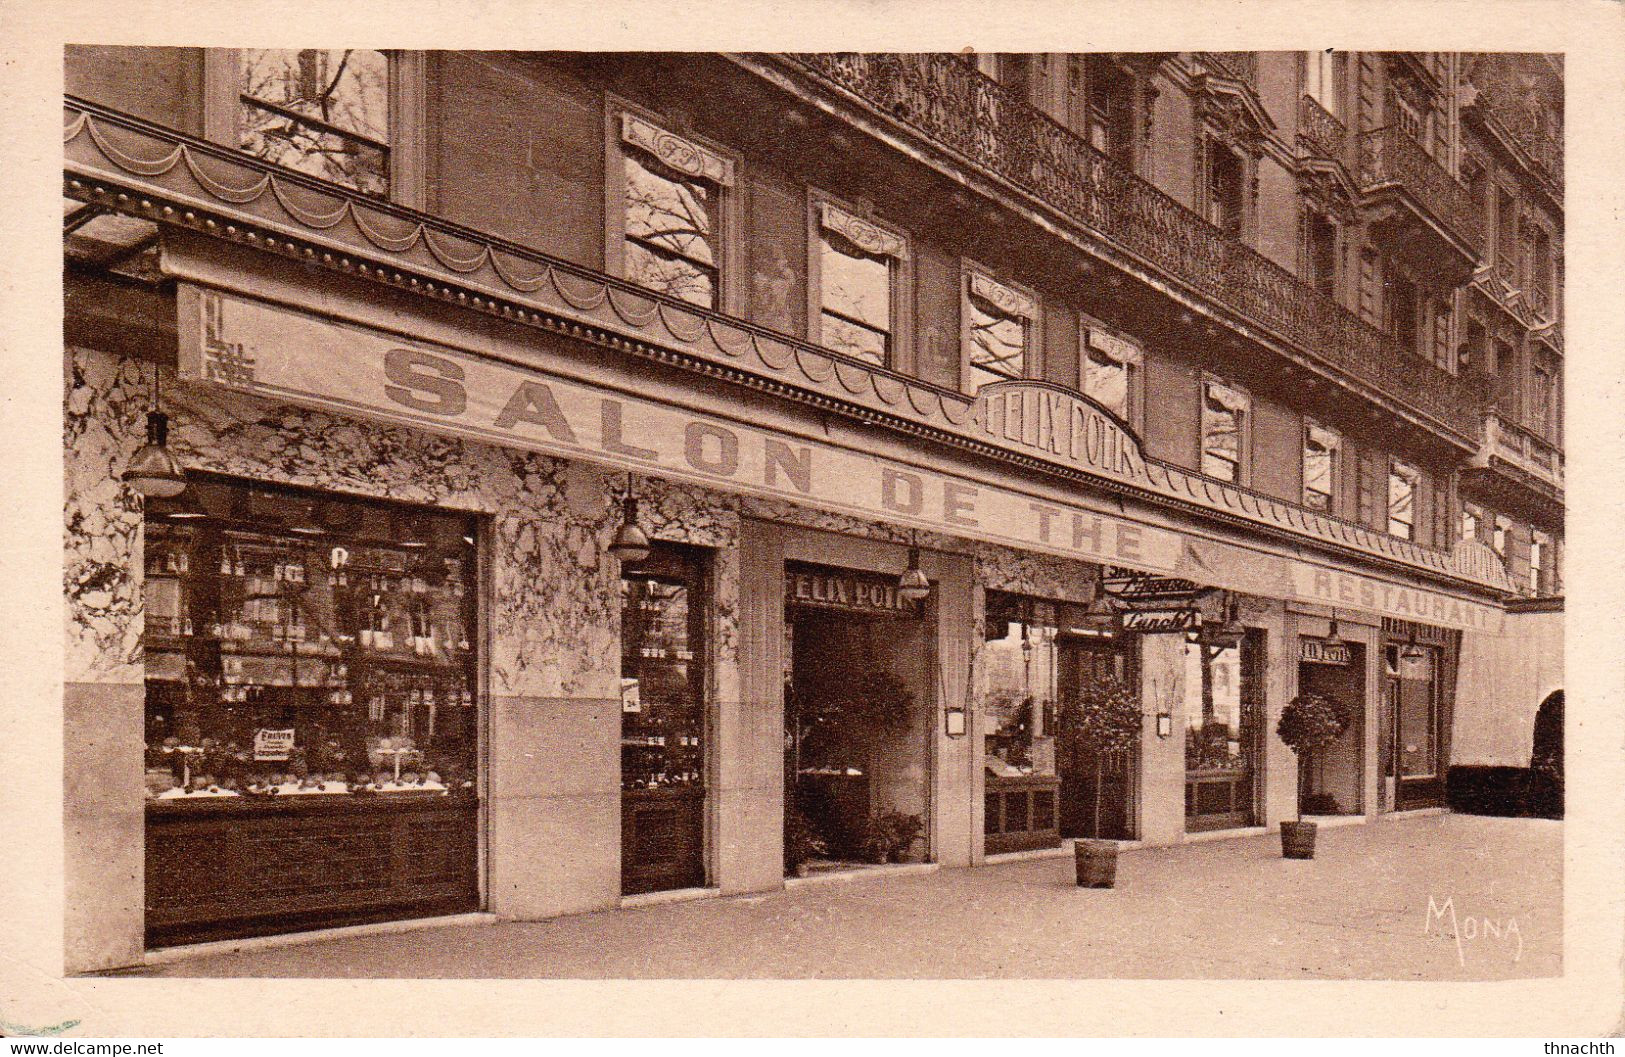 PARIS (Seine) - Restaurant, Salon De Thé, Bar "Saint-Augustin" - 43 Boulevard Malesherbes - Cafés, Hôtels, Restaurants